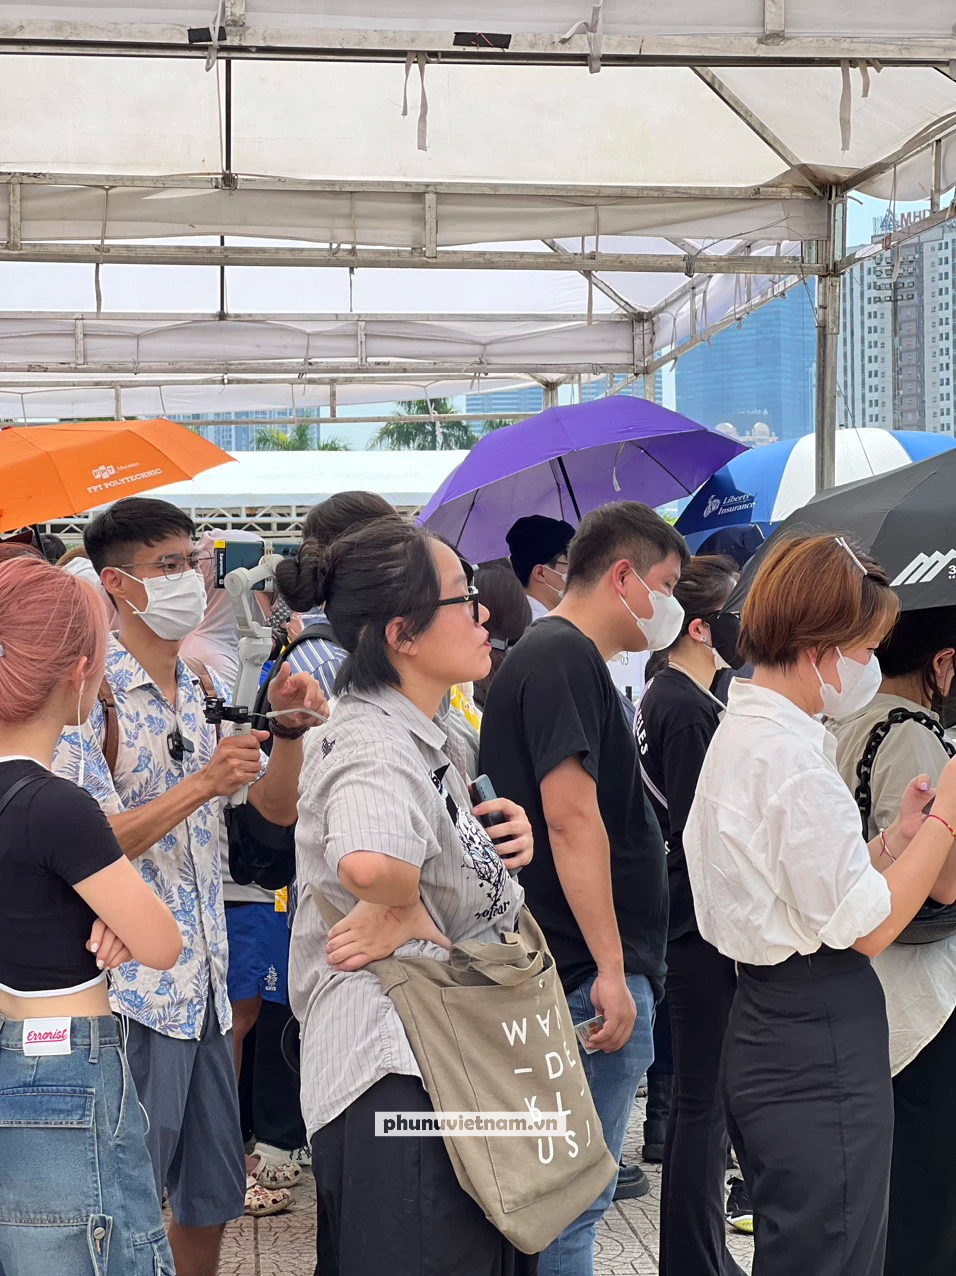 Hàng ngàn người xếp hàng dài trong cái nóng gần 40 độ của Hà Nội để đổi vòng tay show BlackPink - Ảnh 2.